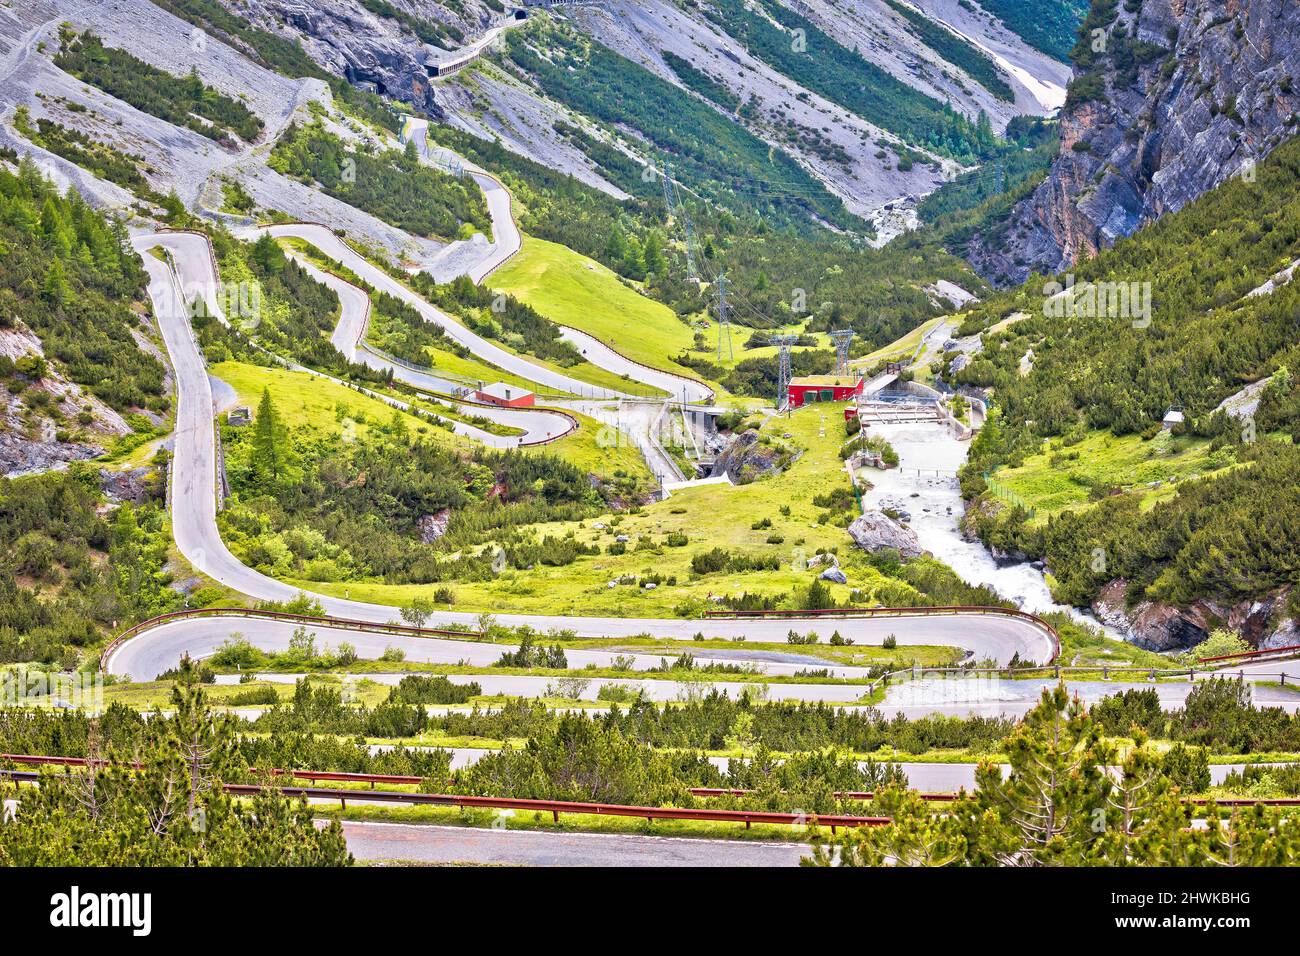 Stilfser Joch Bergpass oder Stilfser Joch Panoramastraße Serpentinen Blick, Grenze zwischen Italien und der Schweiz Stockfoto